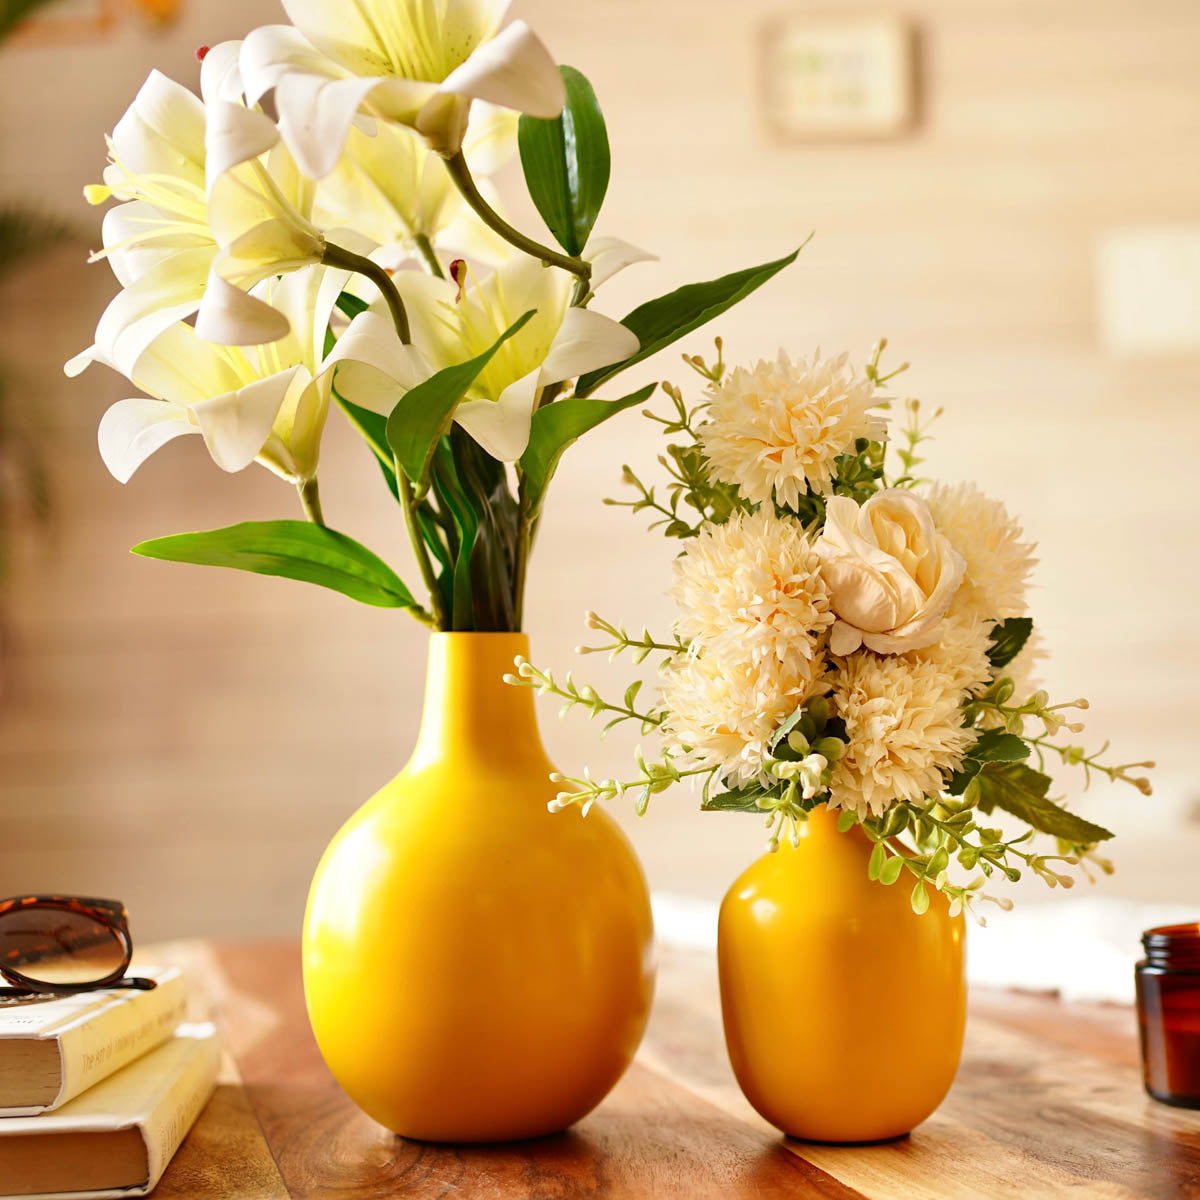 Yellow metal Flower vase - Set of 2 